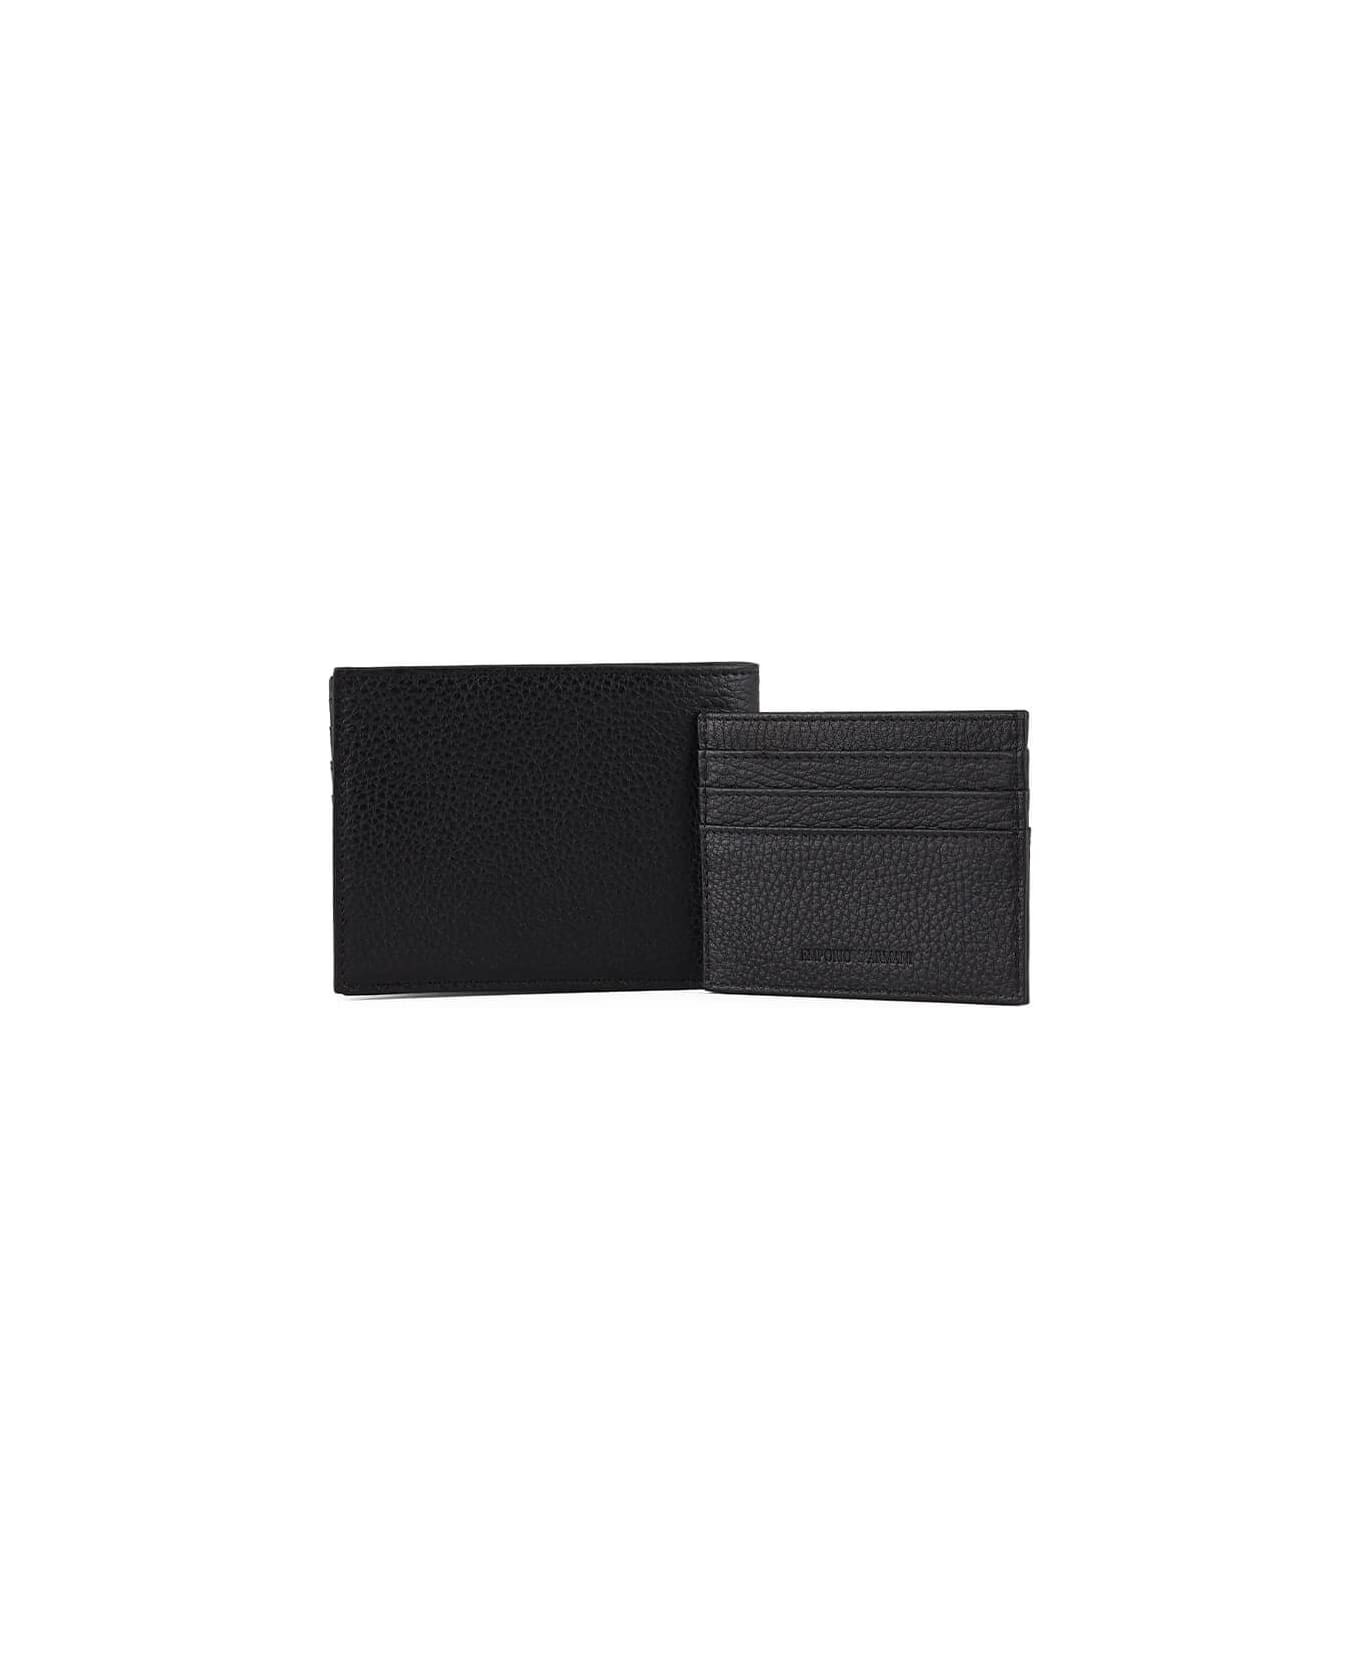 Emporio Armani Black Wallet+card Holder Set - Nero